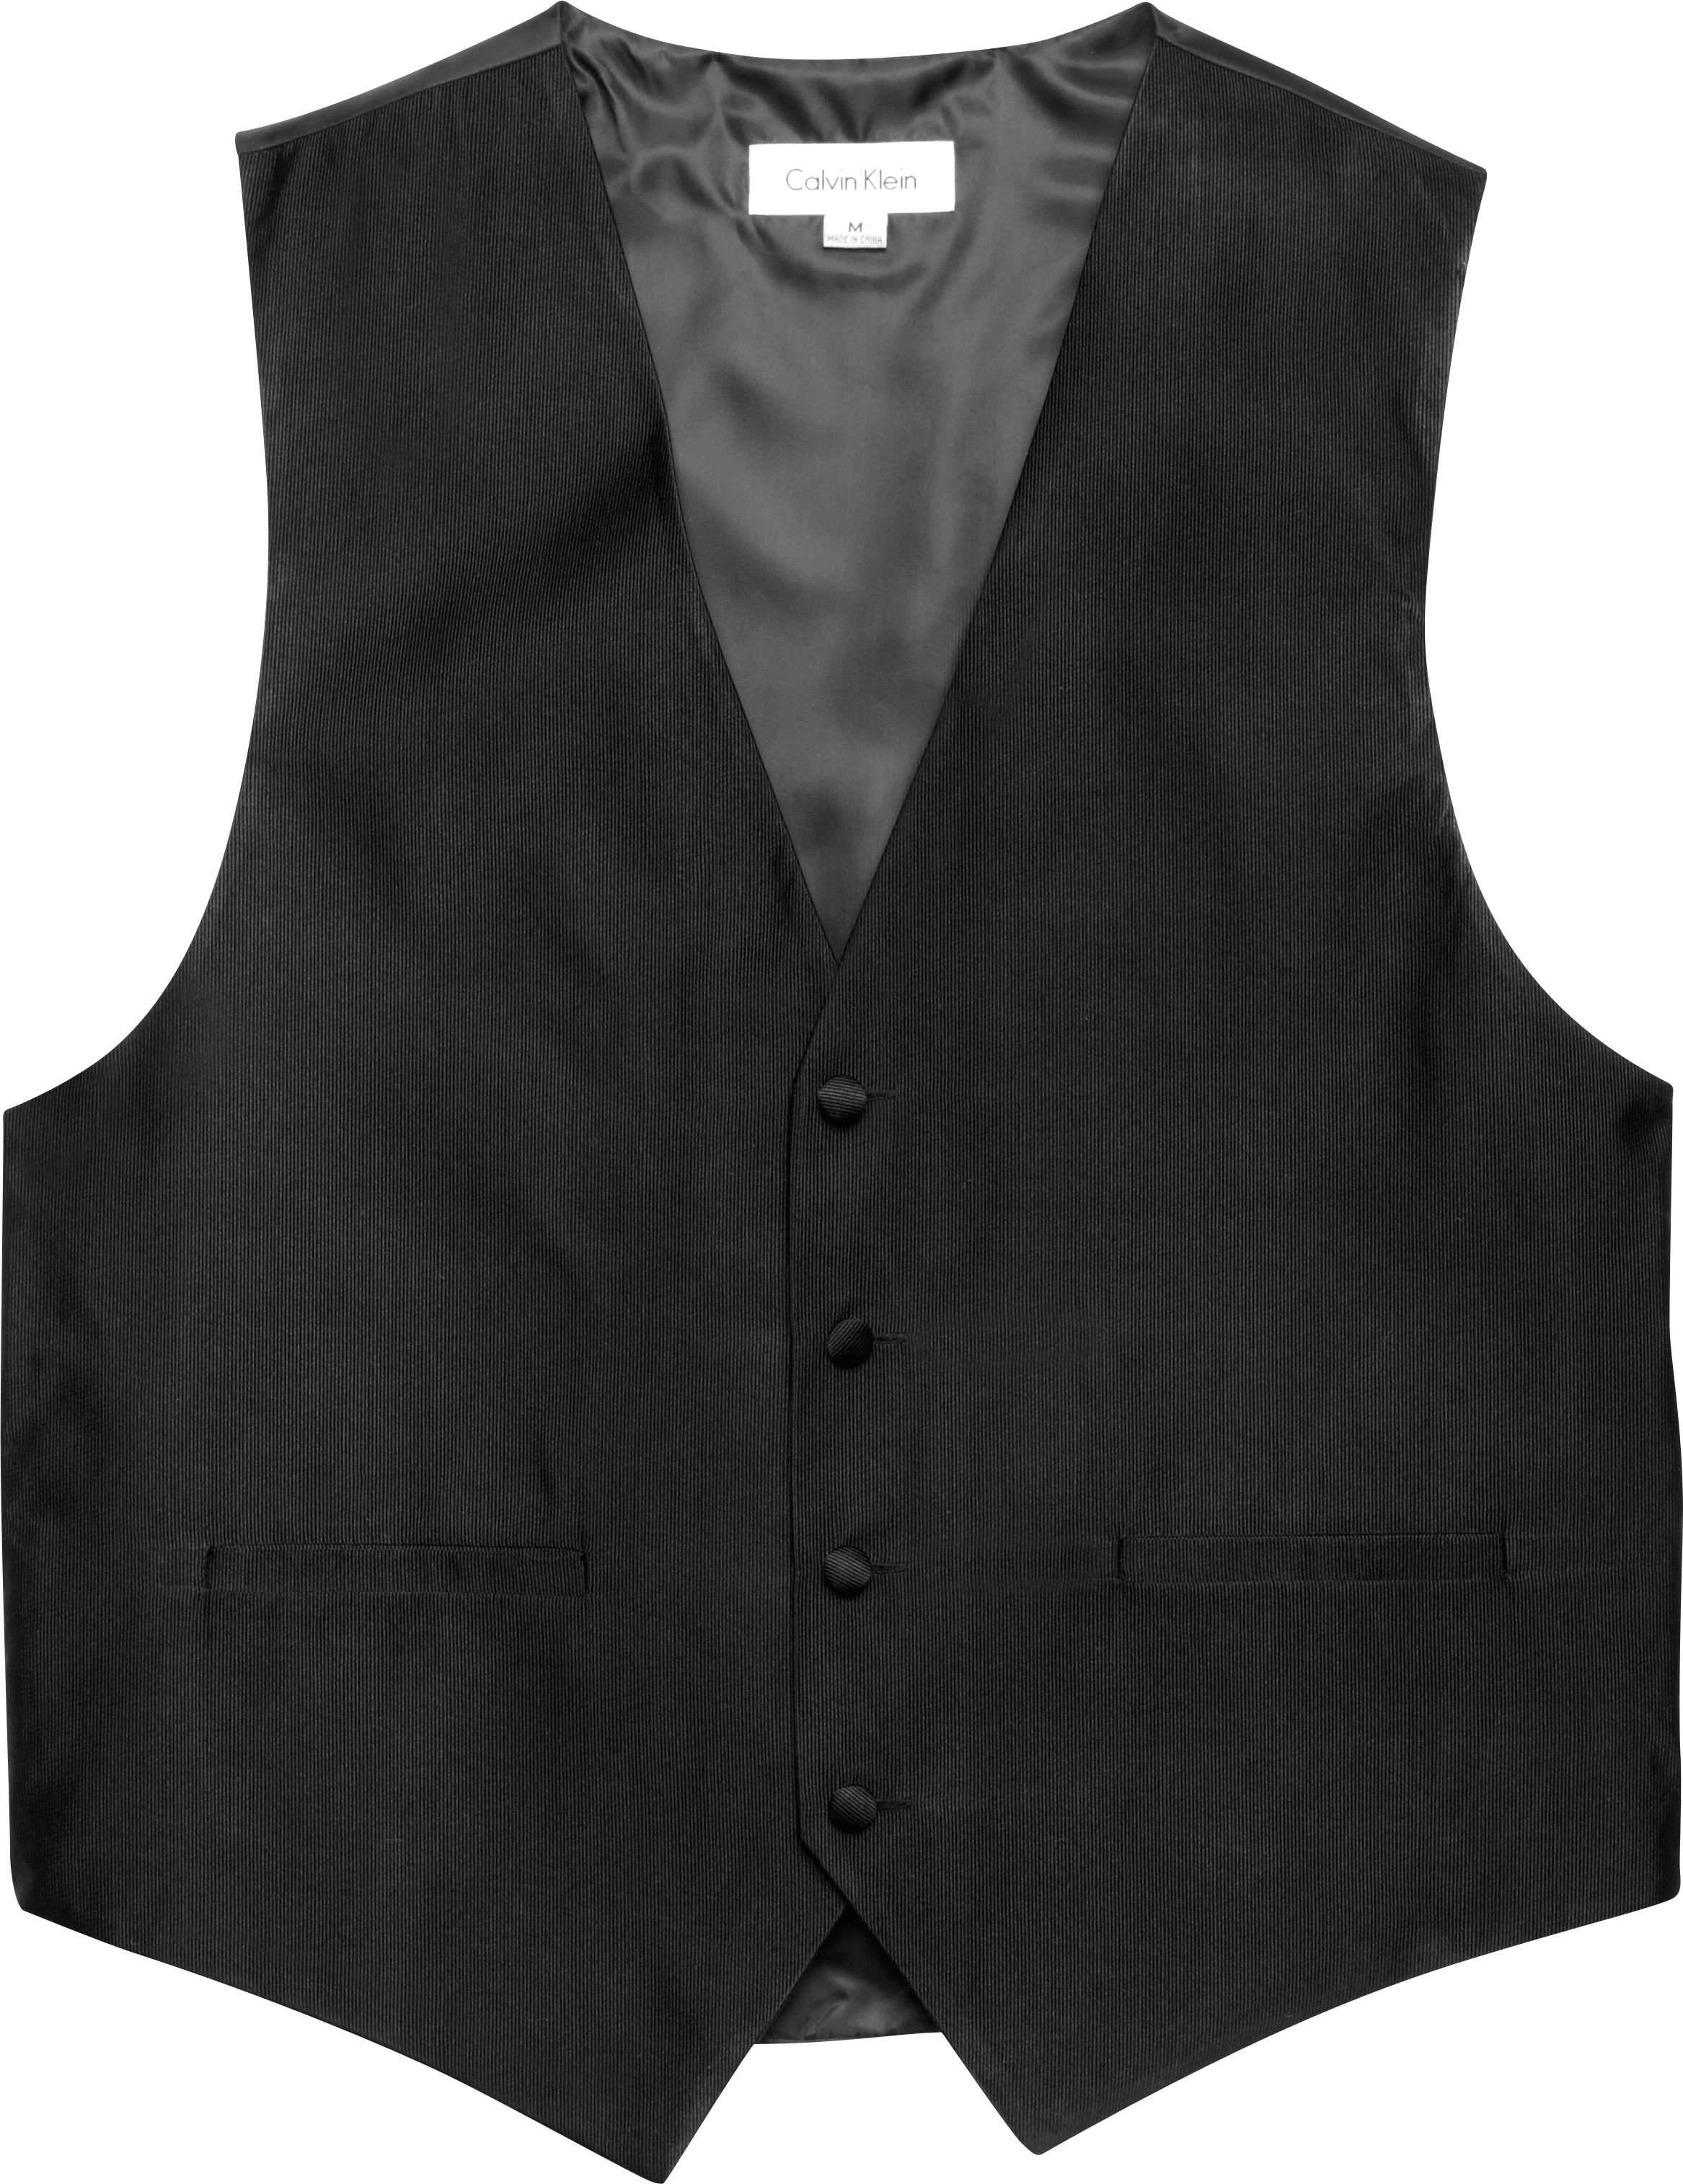 Oprechtheid reparatie whisky Calvin Klein Black Formal Vest - Men's Suits | Men's Wearhouse